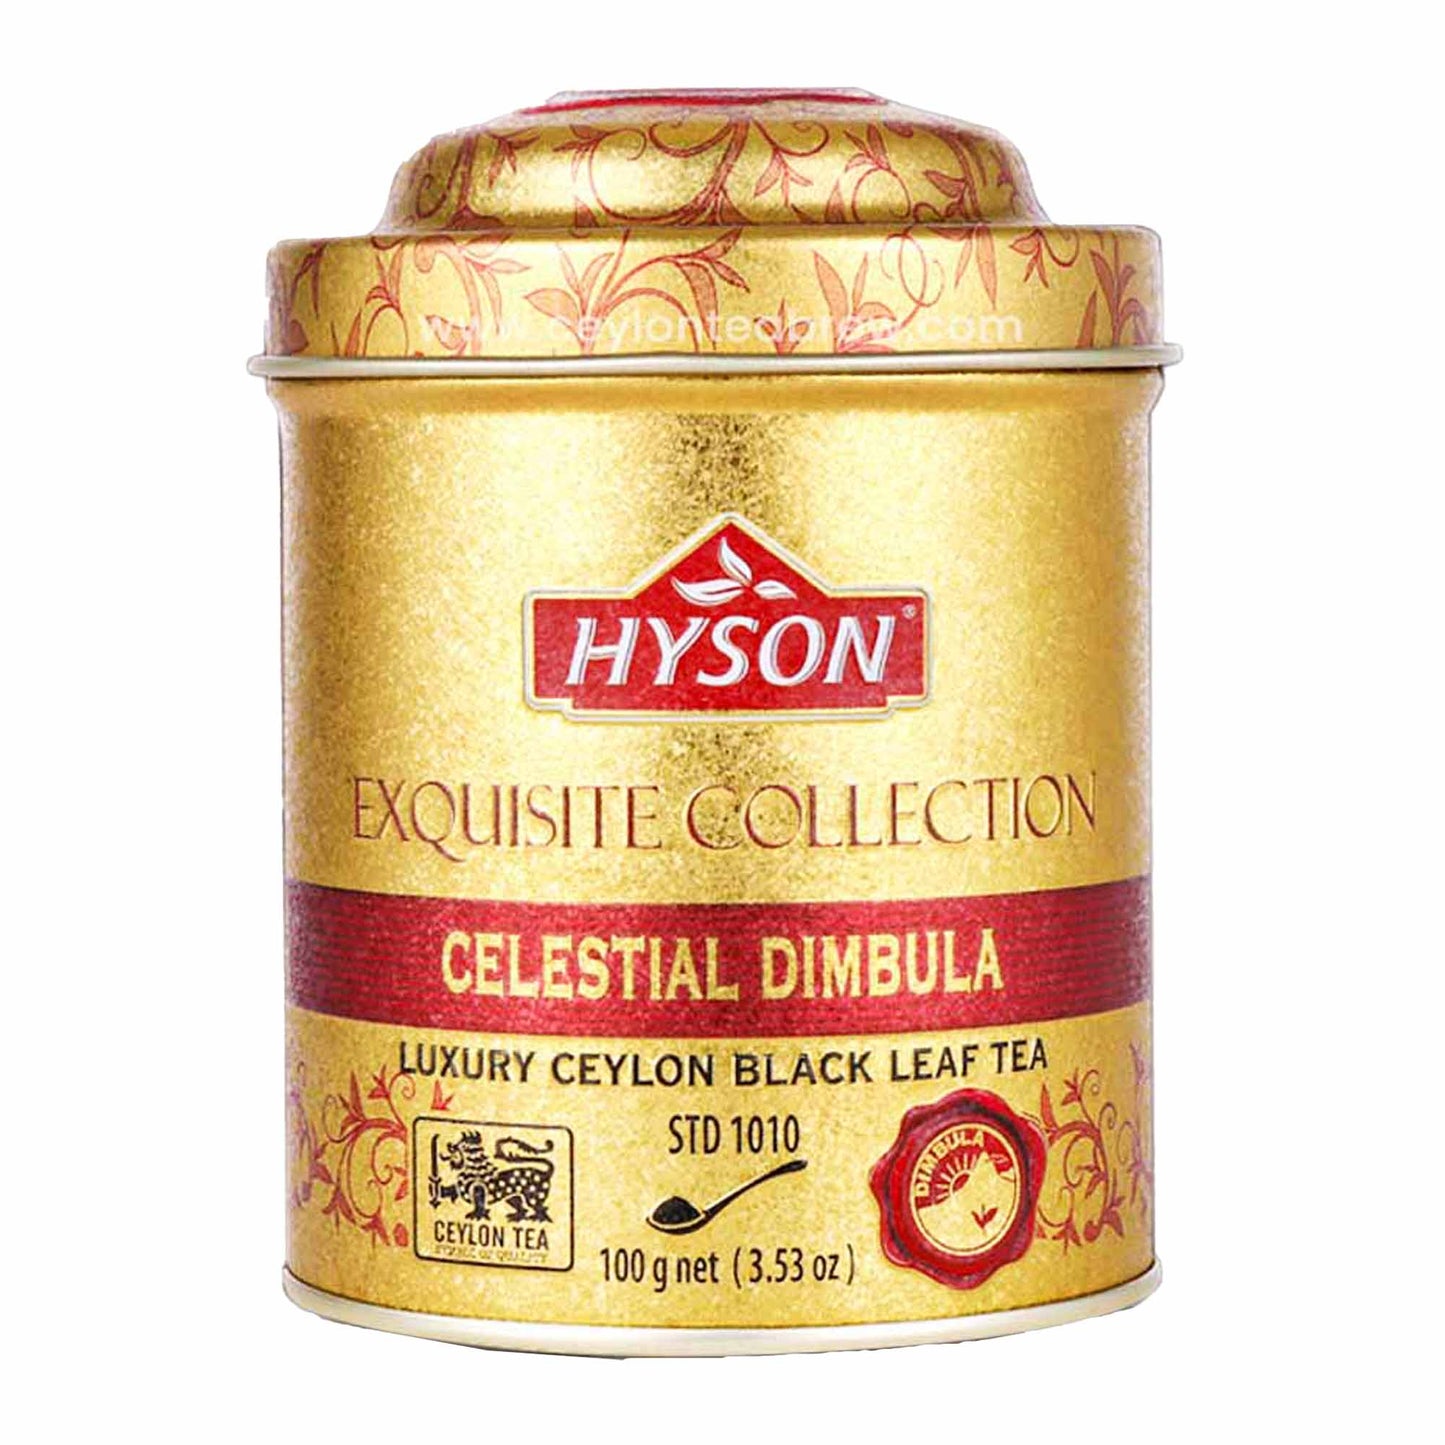 شاي هايسون الرائع ذو أوراق سيليستيال ديمبولا (100 جم)